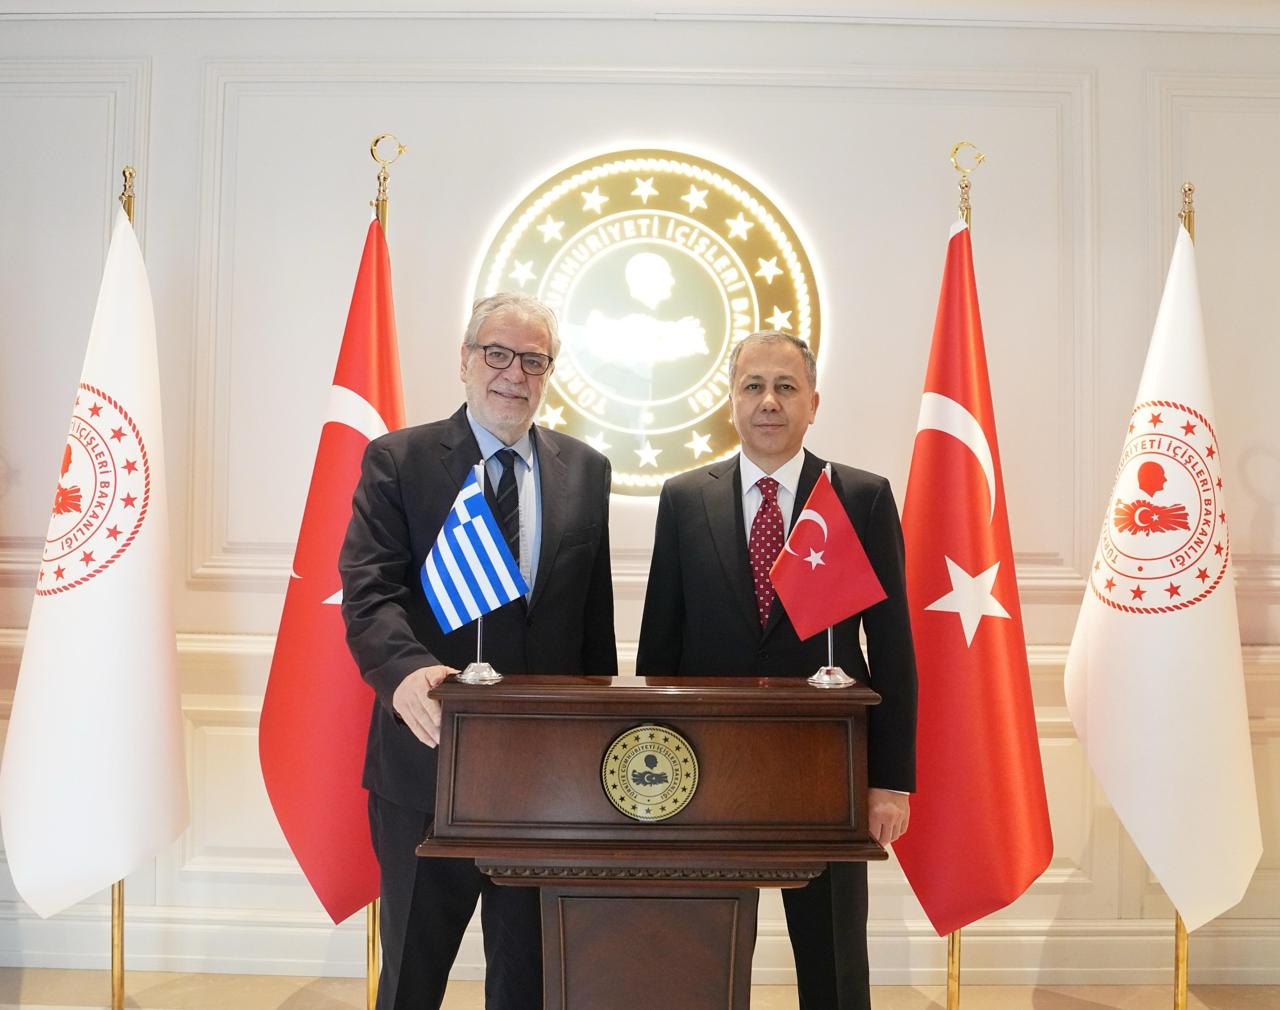 O Υπουργός Ναυτιλίας και Νησιωτικής Πολιτικής Χρήστος Στυλιανίδης με τον Υπουργό Εσωτερικών της Τουρκίας κ. Ali Yerlikaya.